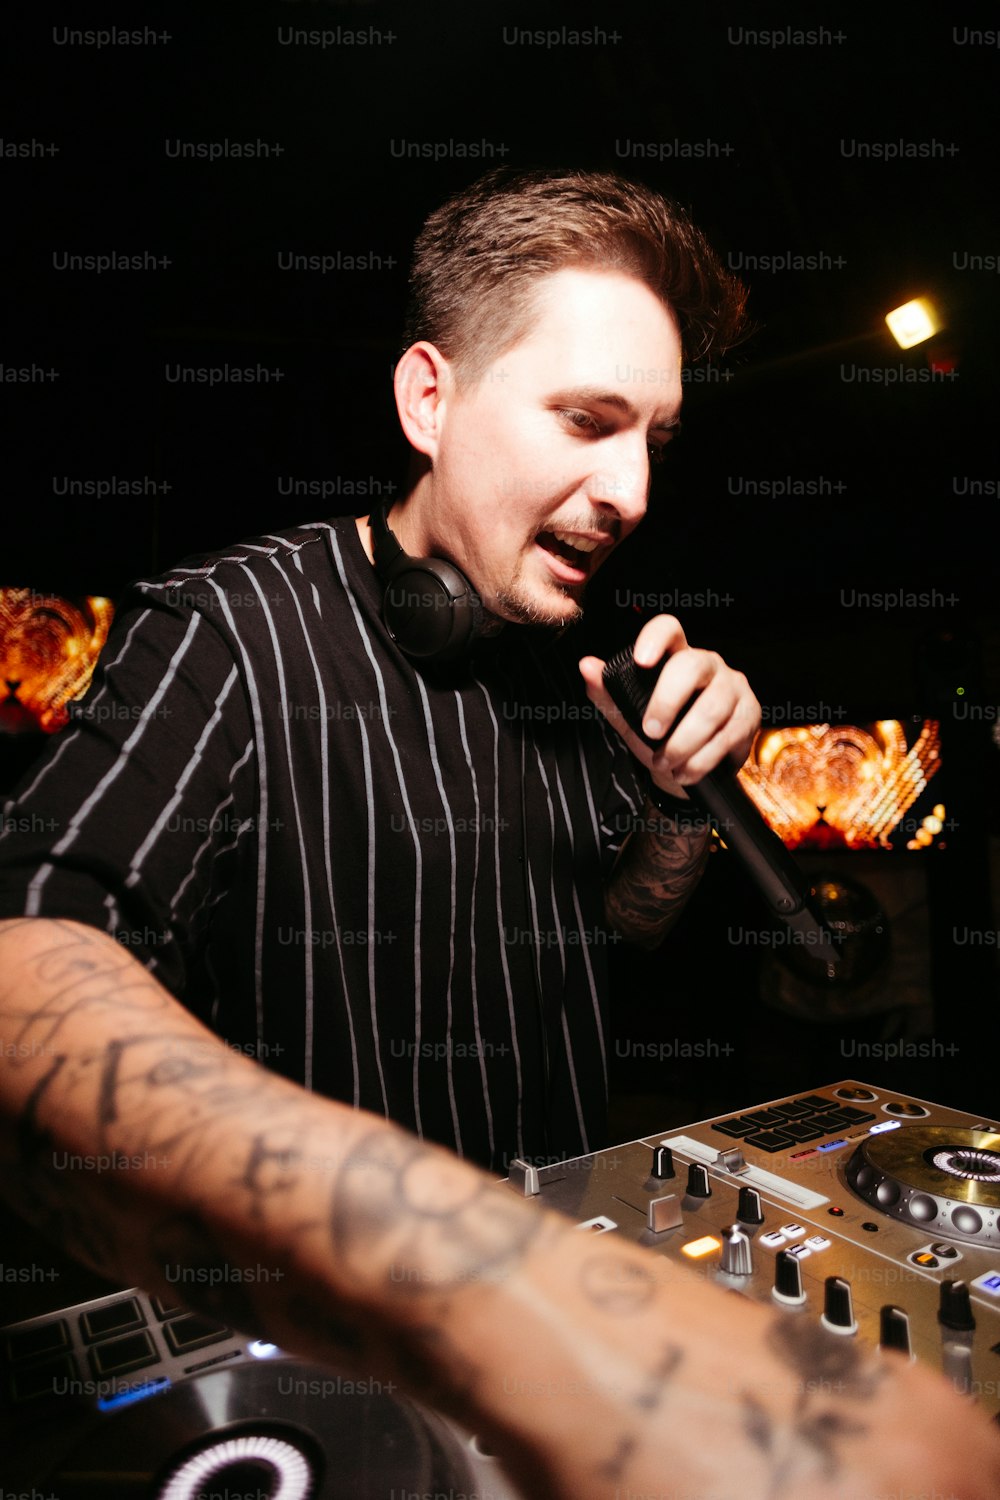 Un hombre con una camisa a rayas blancas y negras sosteniendo un micrófono